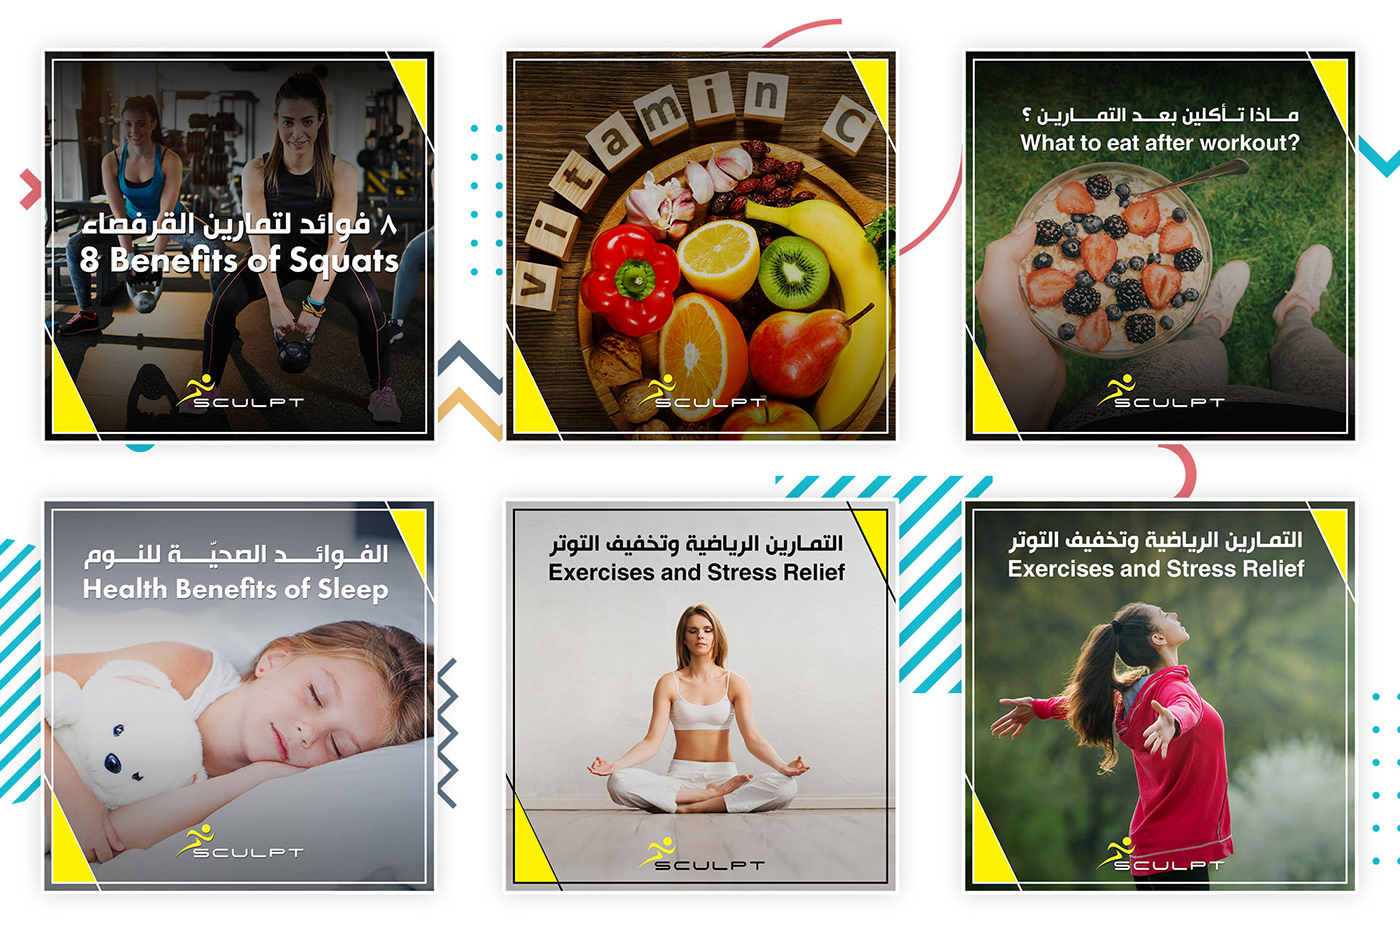 fintess center social media instagram facebook Les Mills zumba gym fitness digital marketing inspiretbb